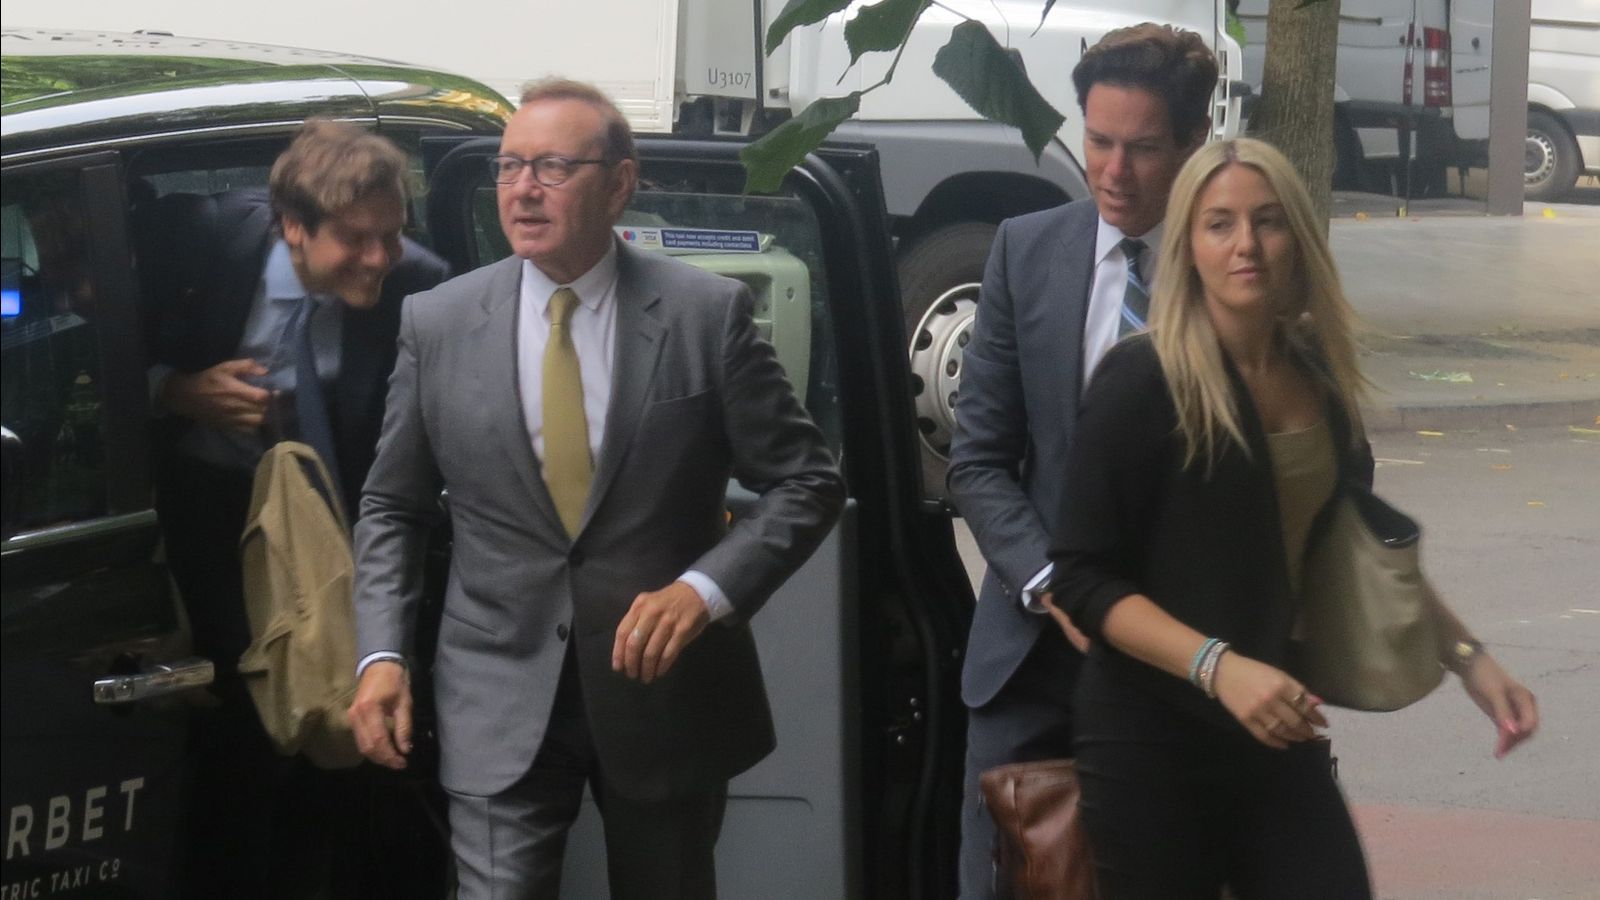 Beweisaufnahme der Anklage im Prozess wegen sexuellen Übergriffs gegen Kevin Spacey in London abgeschlossen